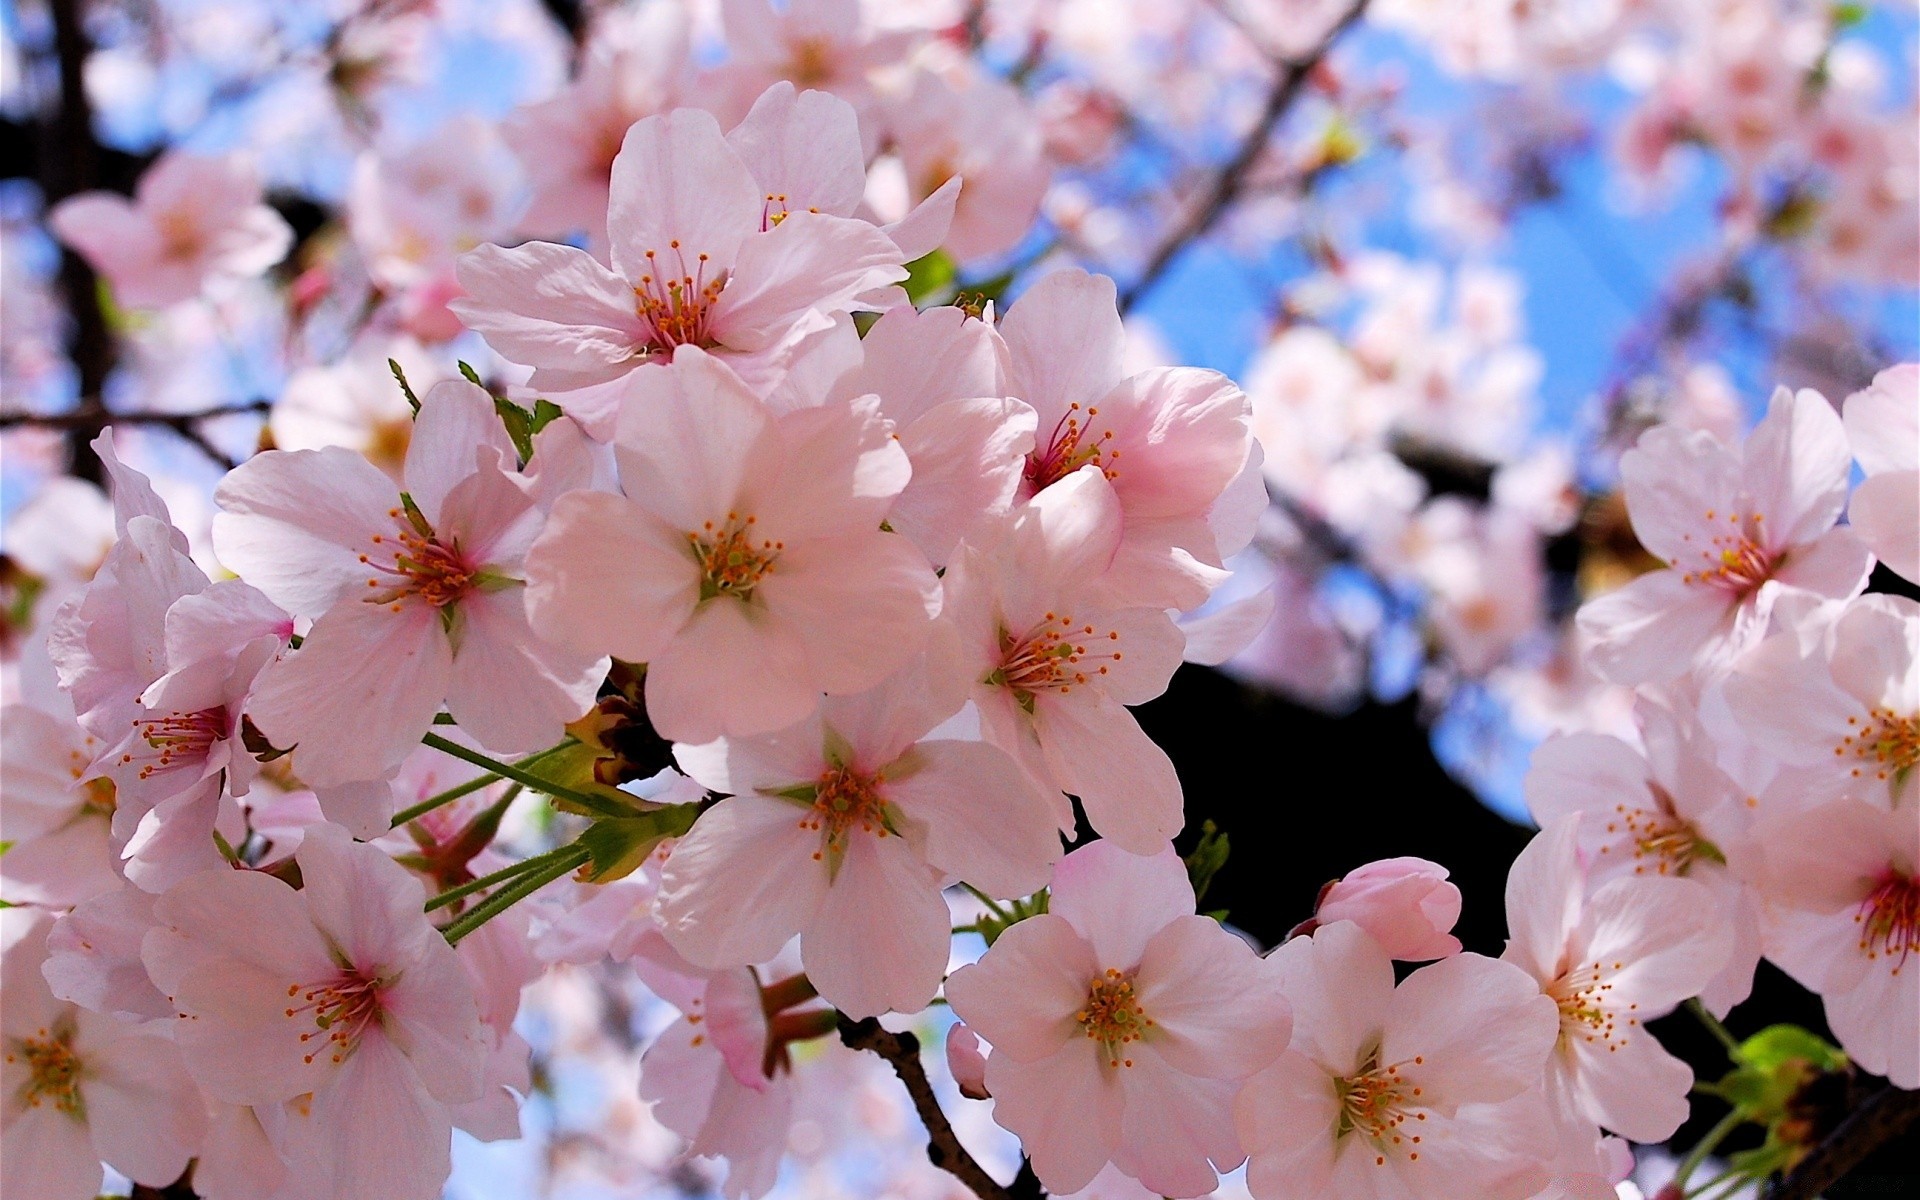 весна цветок вишня флора дерево природа сад филиал блюминг рост лепесток сезон дружище лист на открытом воздухе весна яблоко нежный цветочные парк